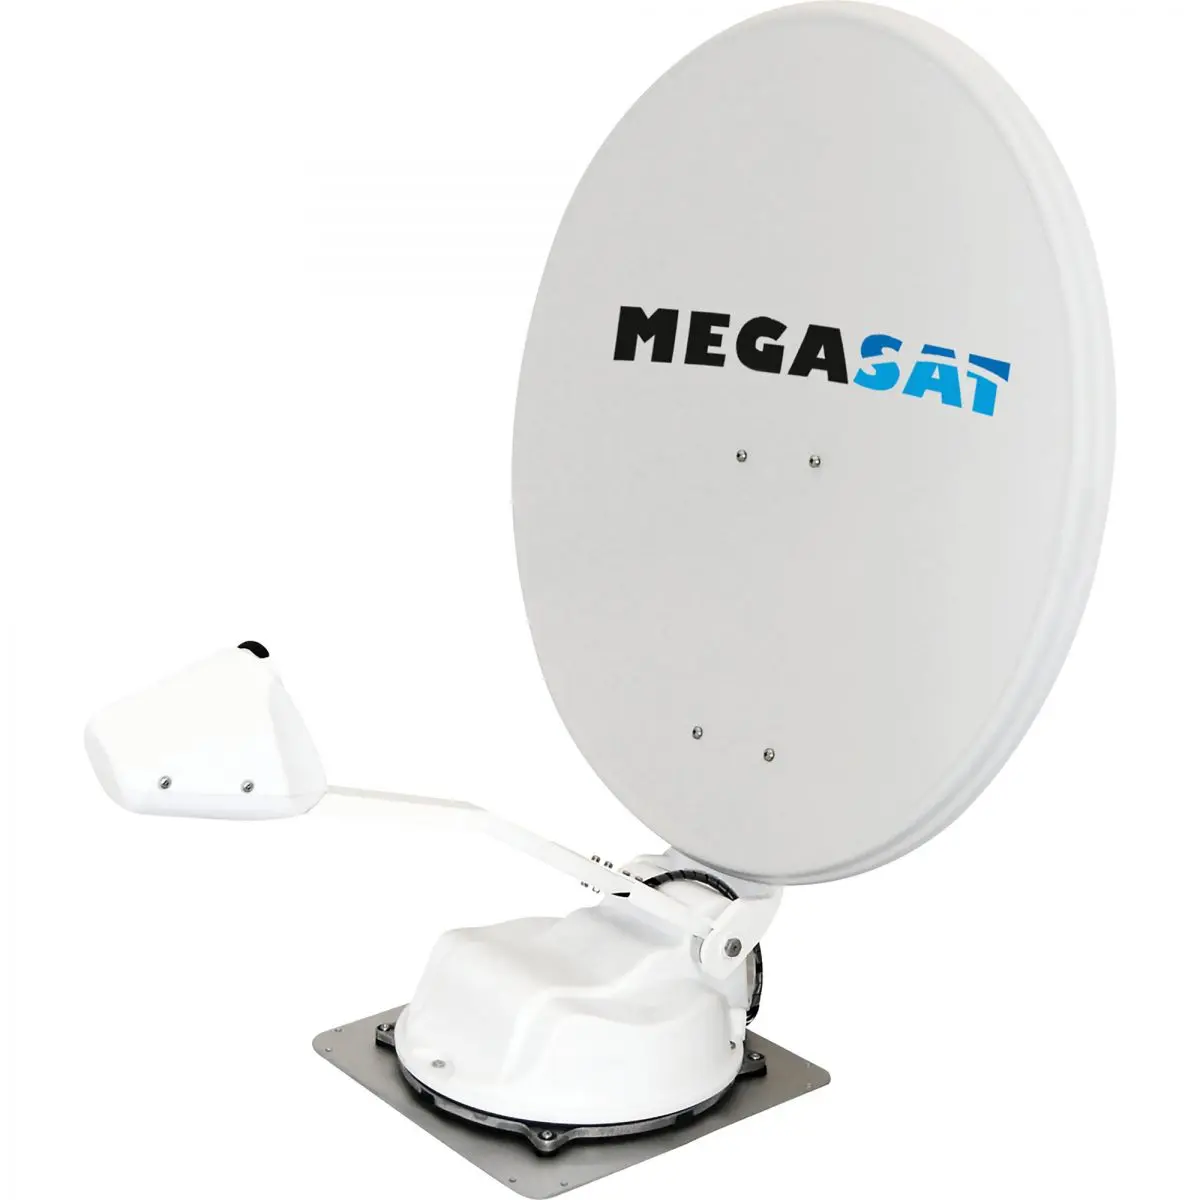 Satelitný systém Megasat Caravanman 85 Professional GPS